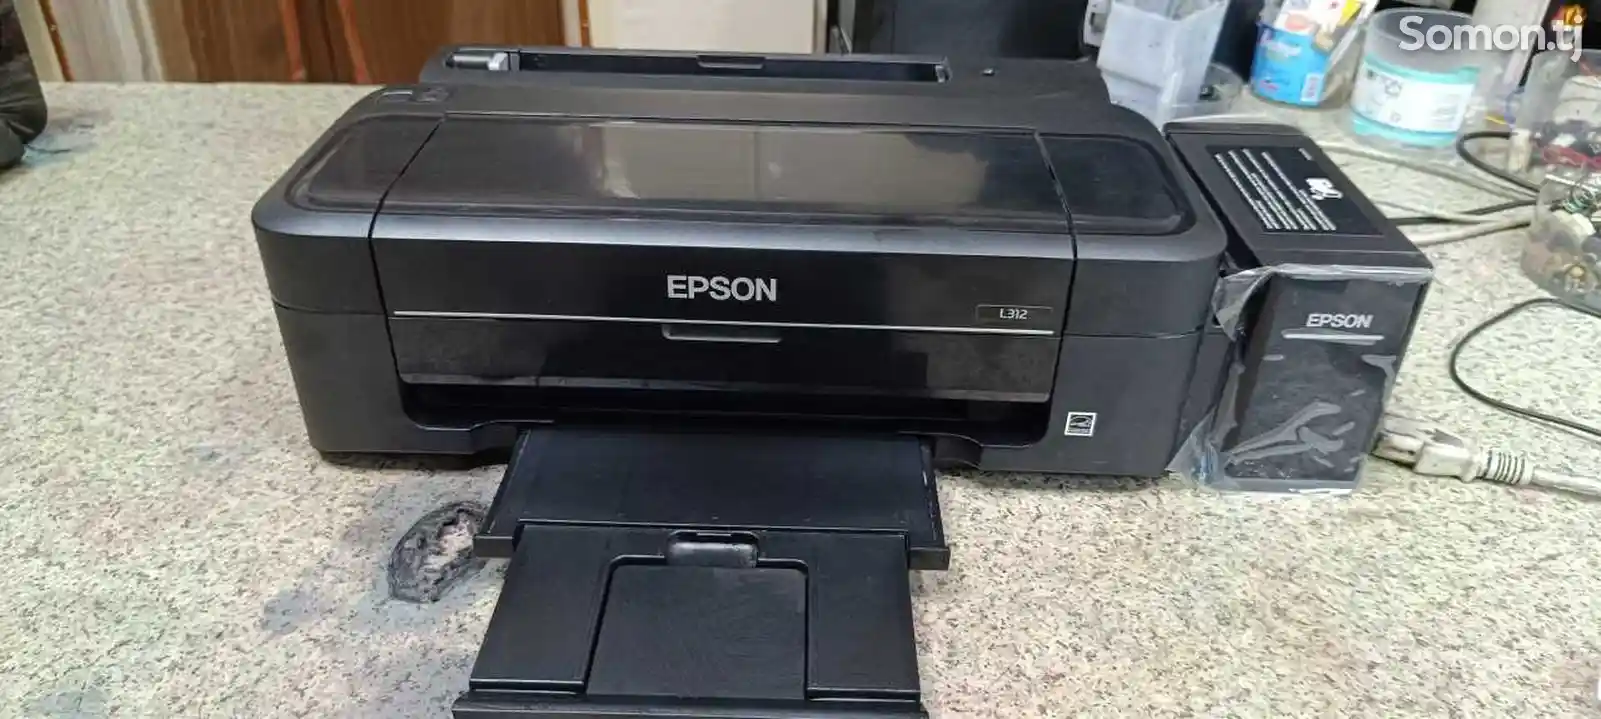 Принтер Epson L312-1